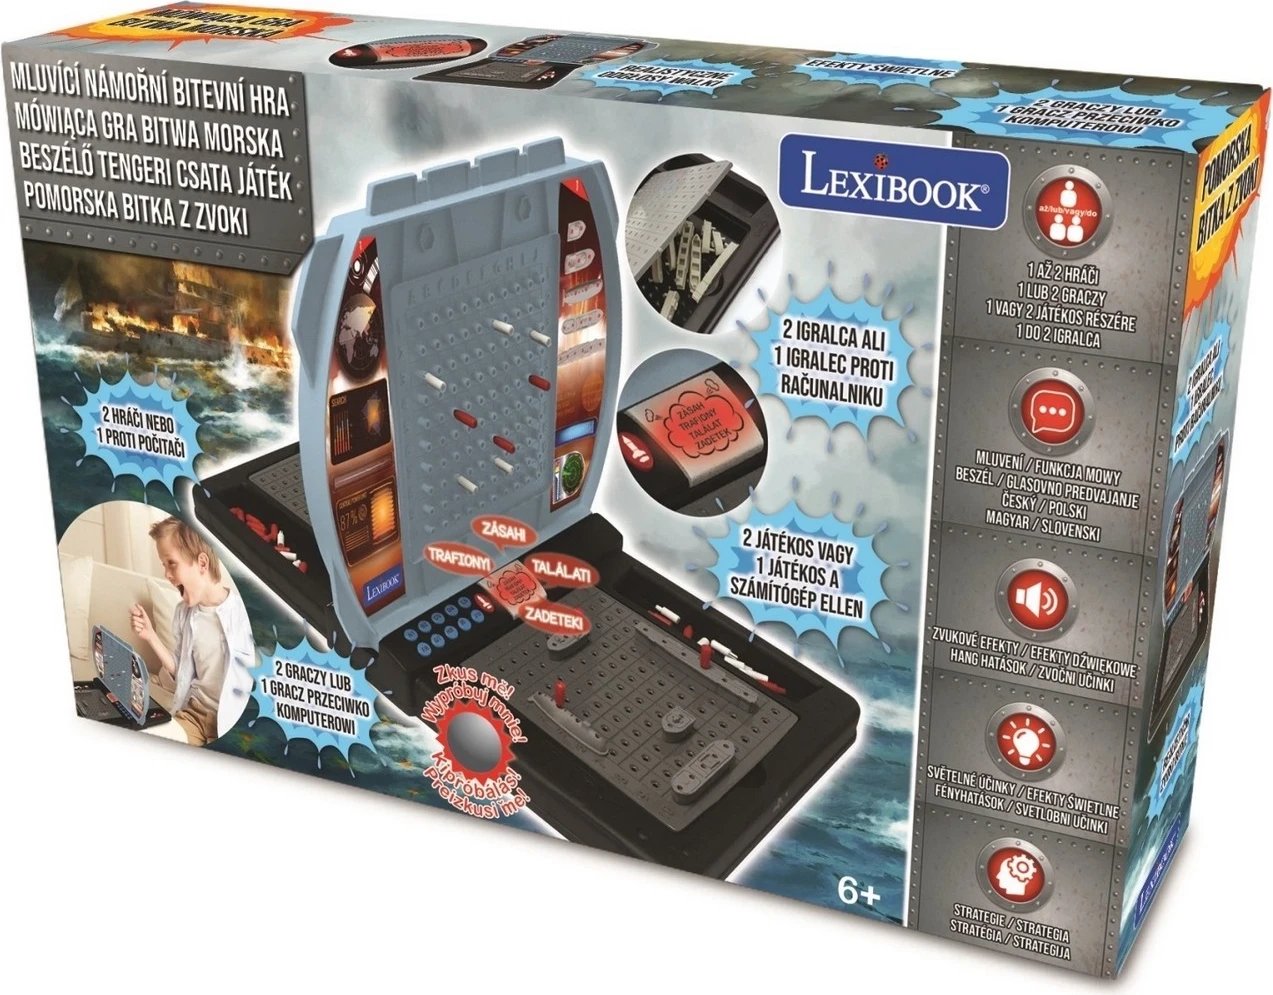 Lojë Elektronike e Betejës Detare Lexibook